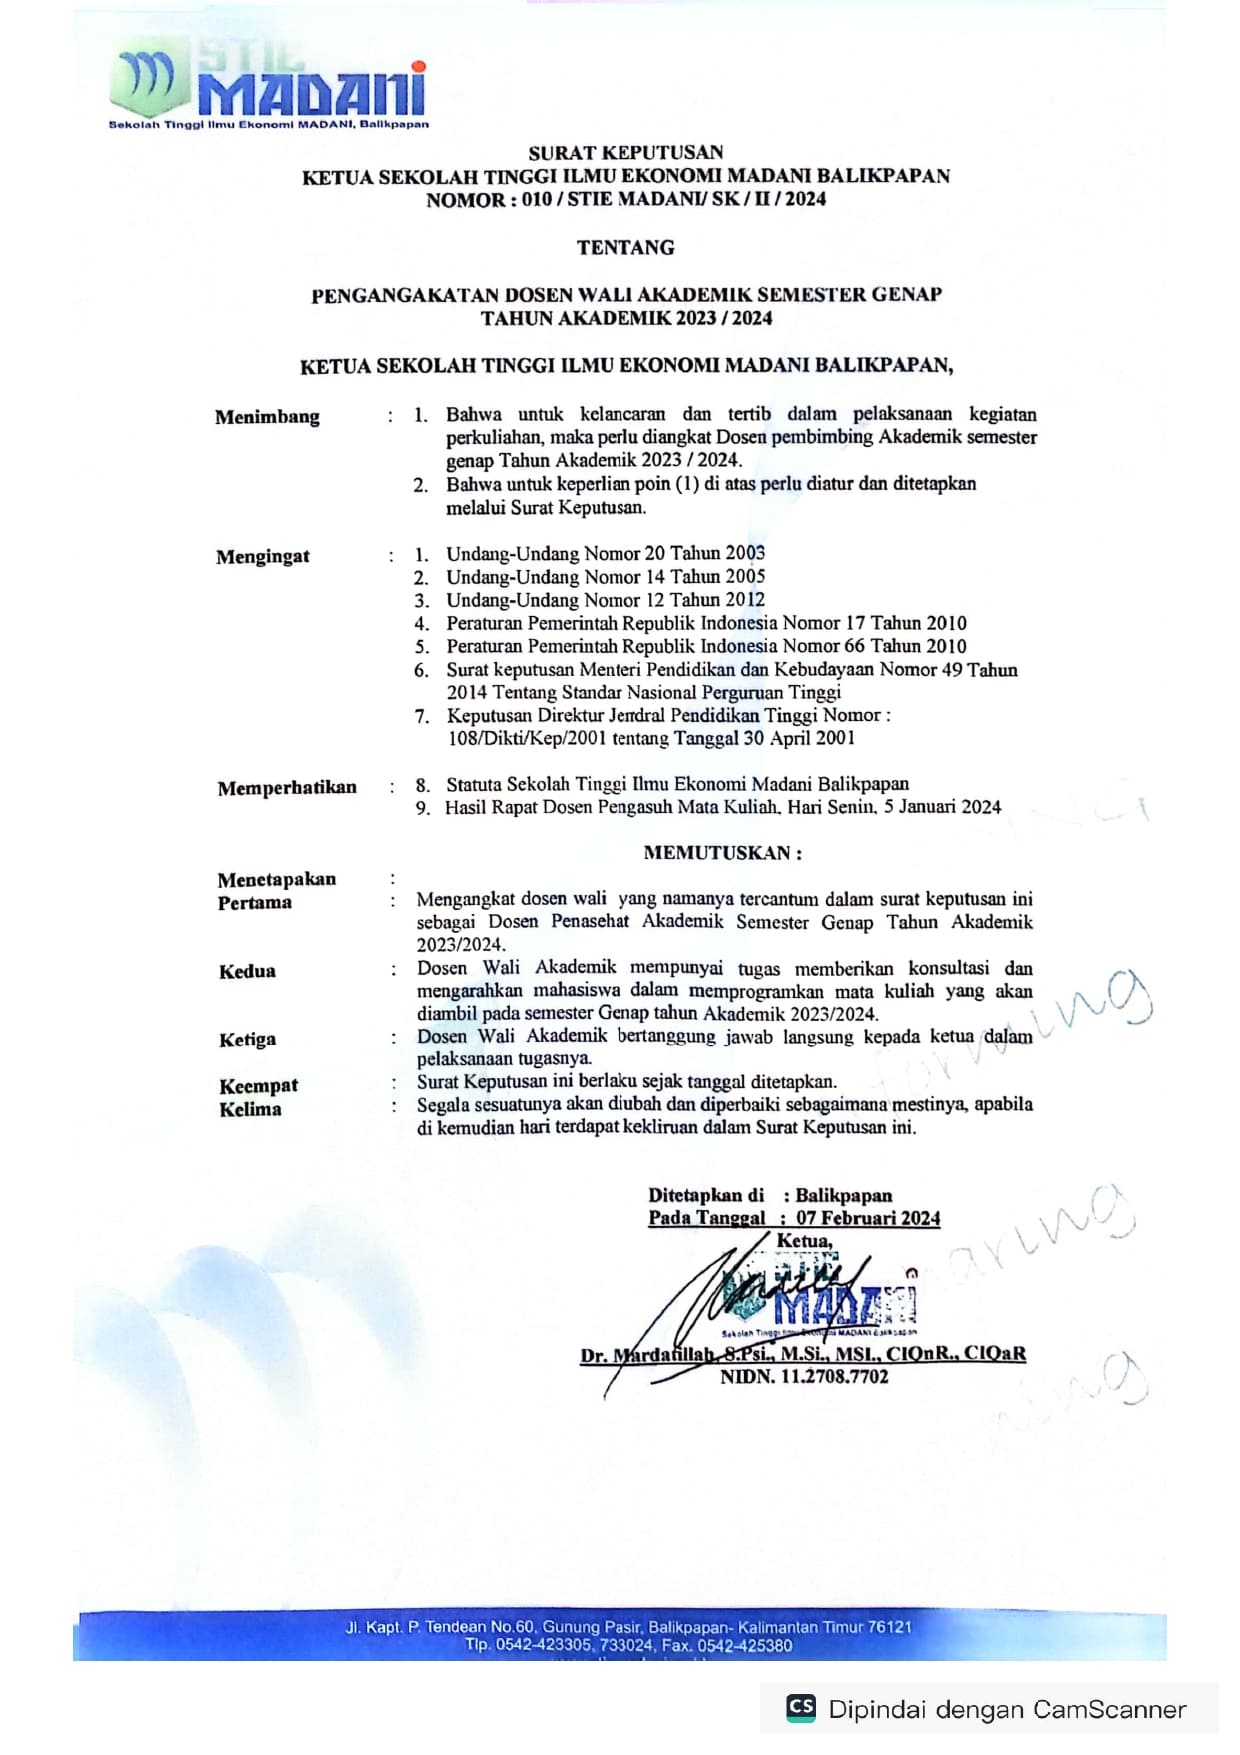 You are currently viewing Jadwal Kegiatan Belajar Mengajar Semester Genap Tahun Akademik 2023/2024 Beserta Dosen Walinya